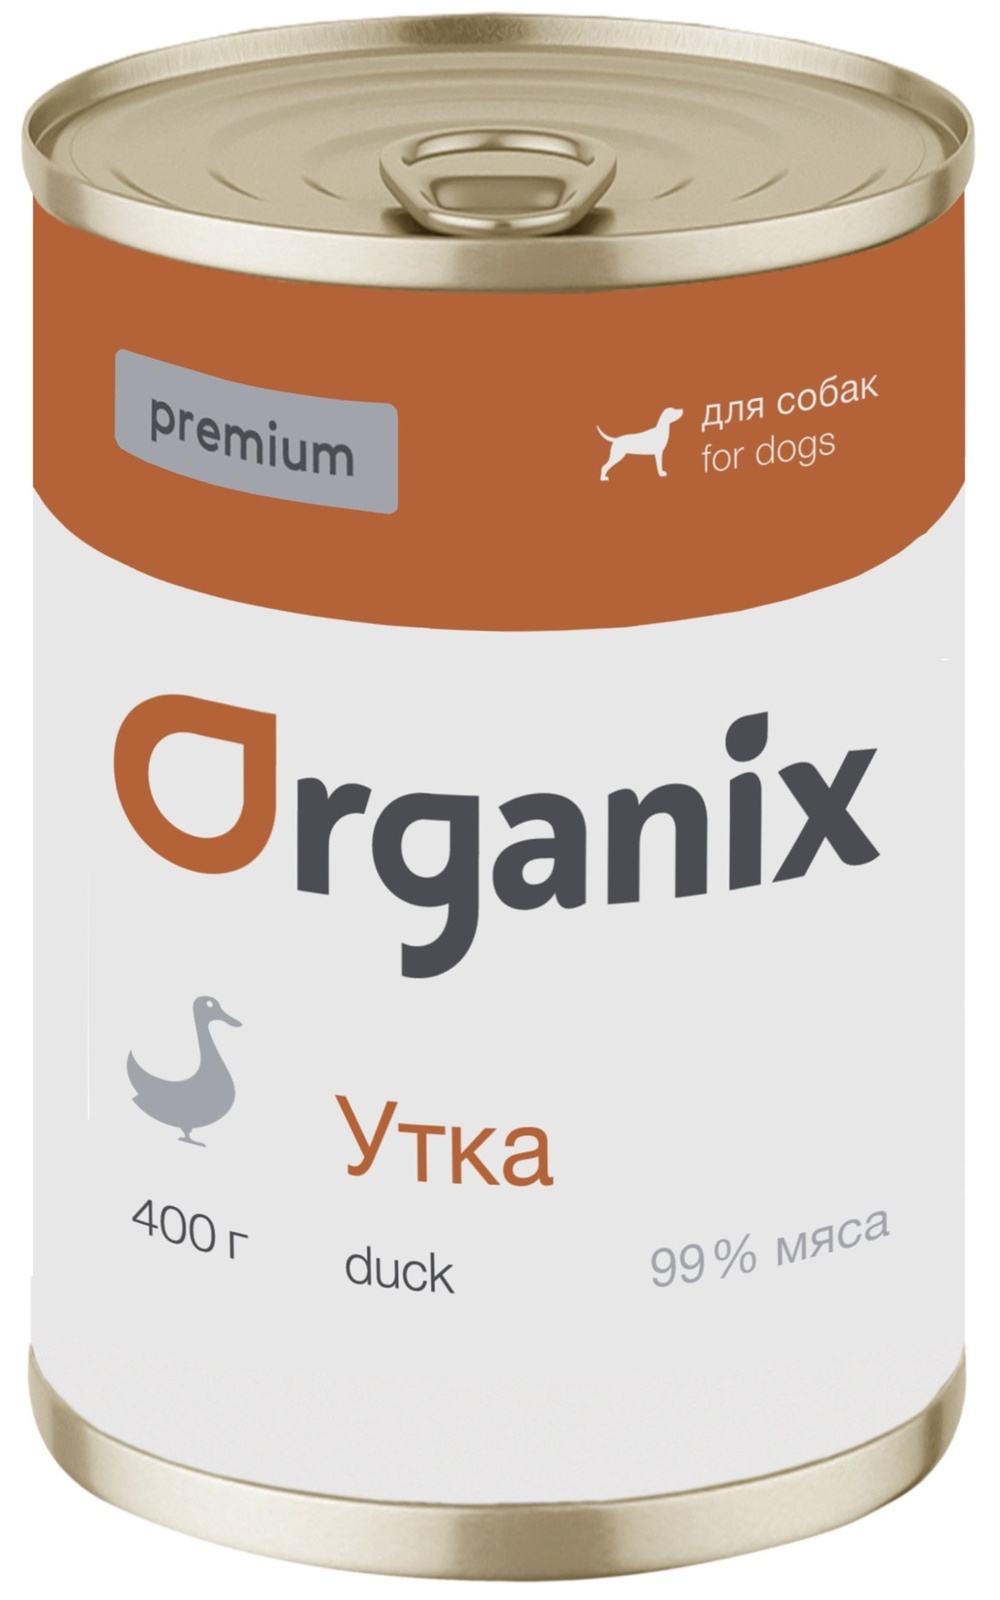 Organix консервы Organix монобелковые премиум консервы для собак, с уткой (100 г) organix консервы organix монобелковые премиум консервы для собак с уткой 100 г